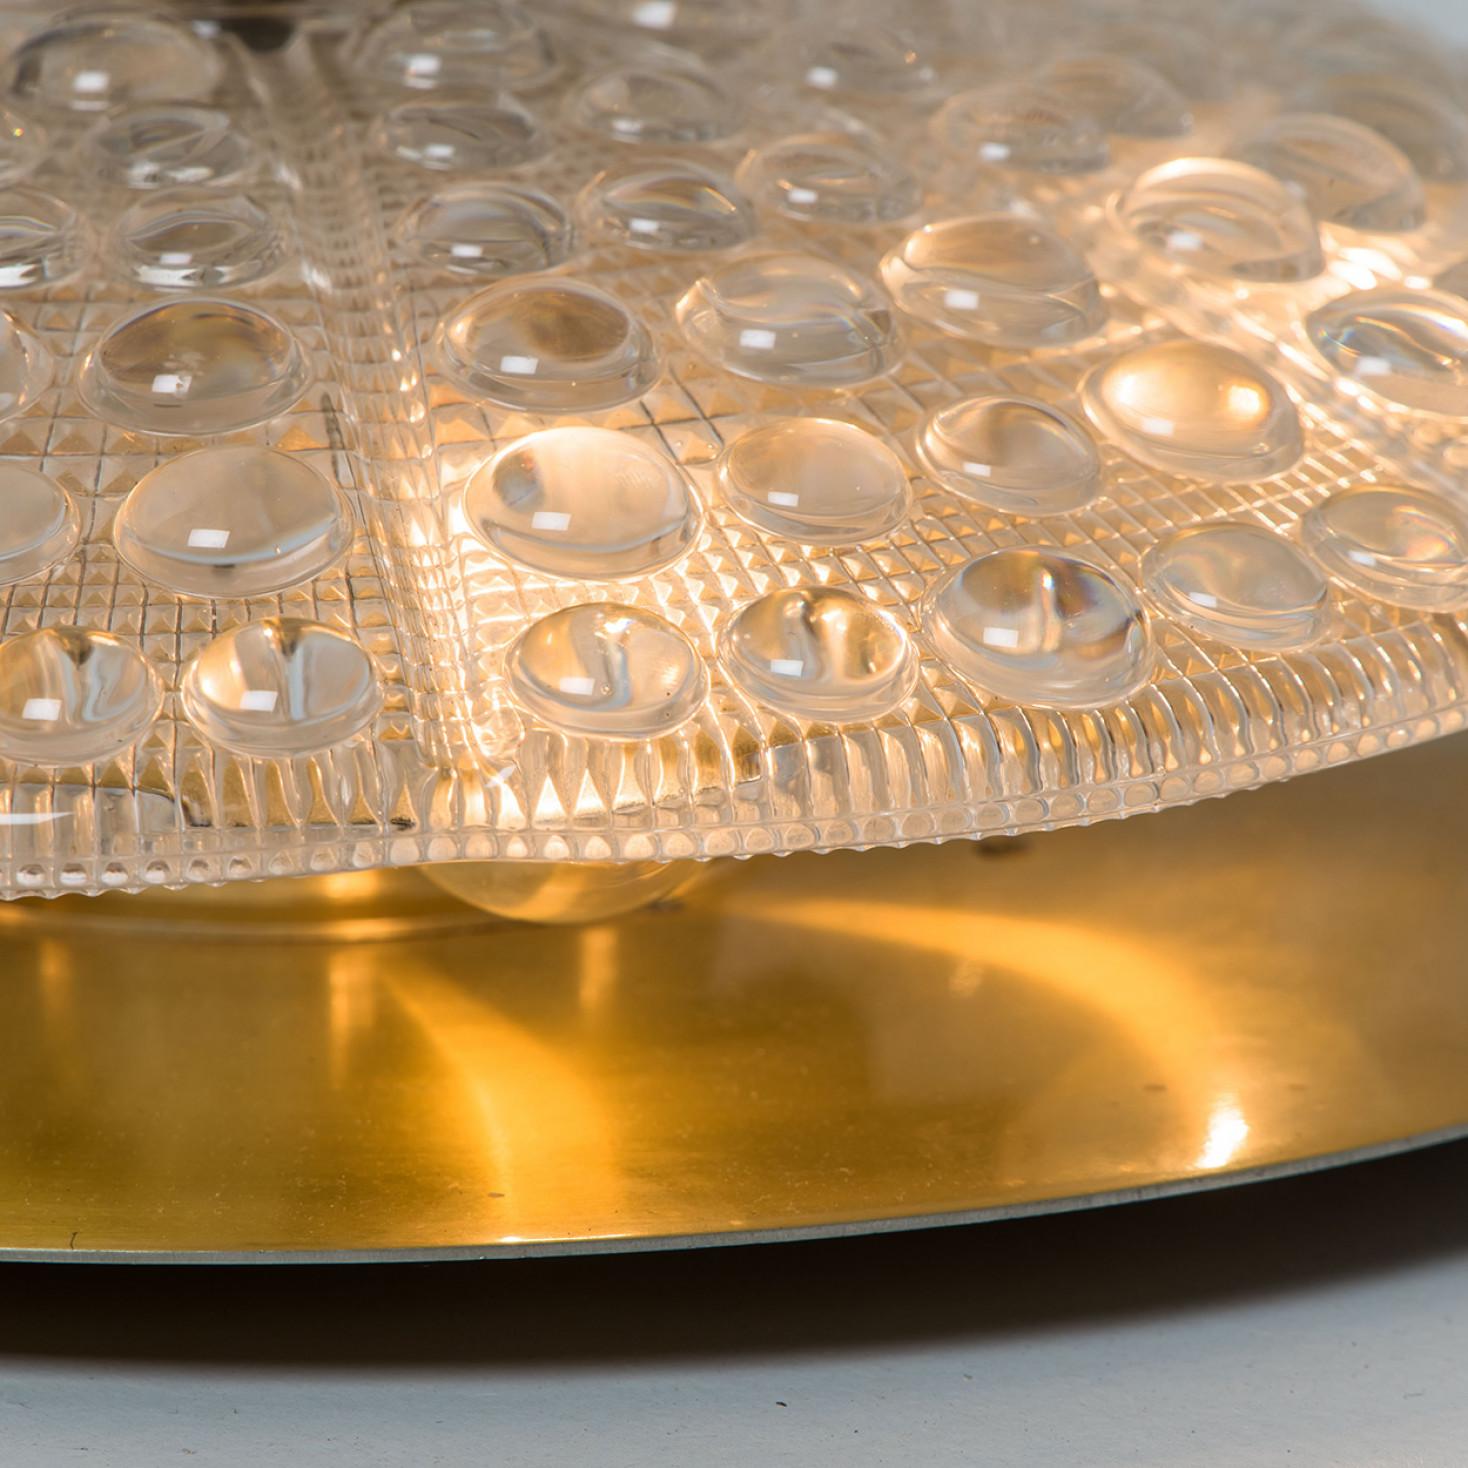 Merveilleuse monture affleurante fabriquée par Fagerlund, Suède. À partir de 1960 environ. Il s'agit d'une magnifique plaque de verre en cristal faite à la main sur une plaque en laiton poli.

La texture du verre donne l'illusion de cristaux de